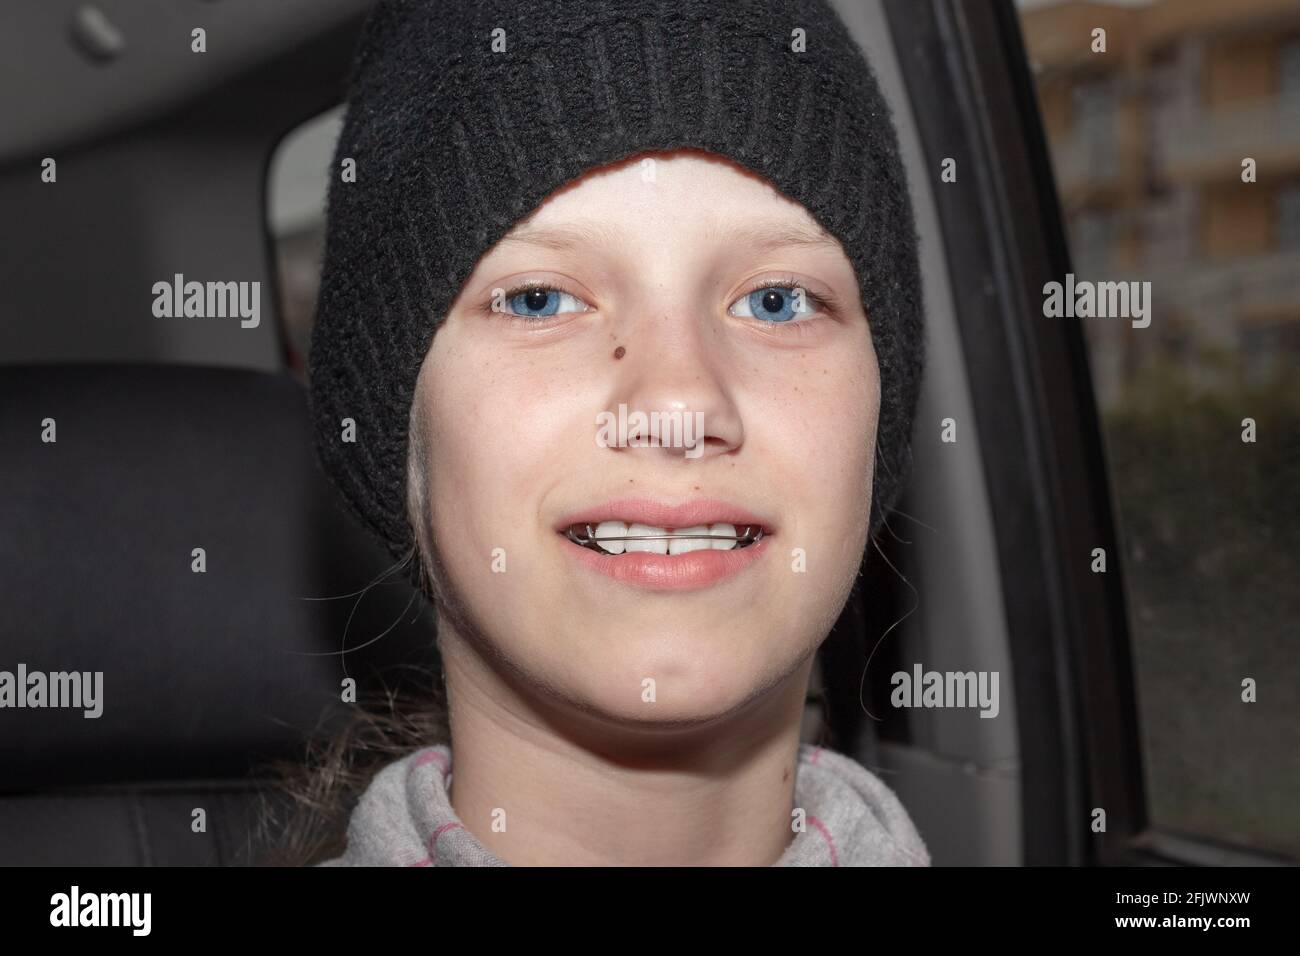 Una ragazza adolescente in un cappello nero con bretelle di ferro sui denti sorride mentre si siede in un salone di auto. Raddrizzare il morso e la bellezza dei denti. Foto Stock